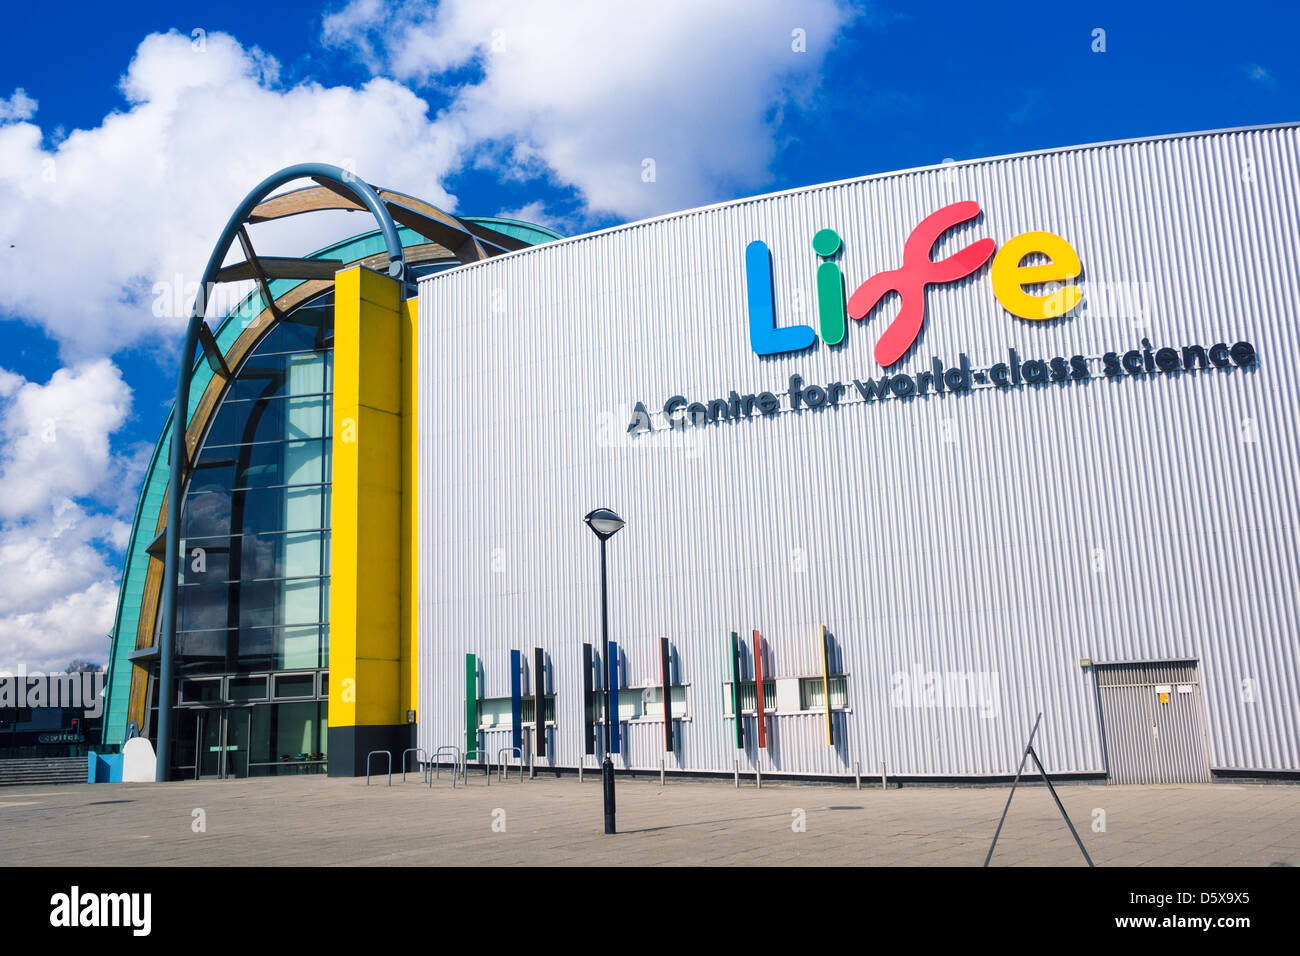 Le Centre de la vie, un centre de classe mondiale - la science à Newcastle upon Tyne Banque D'Images